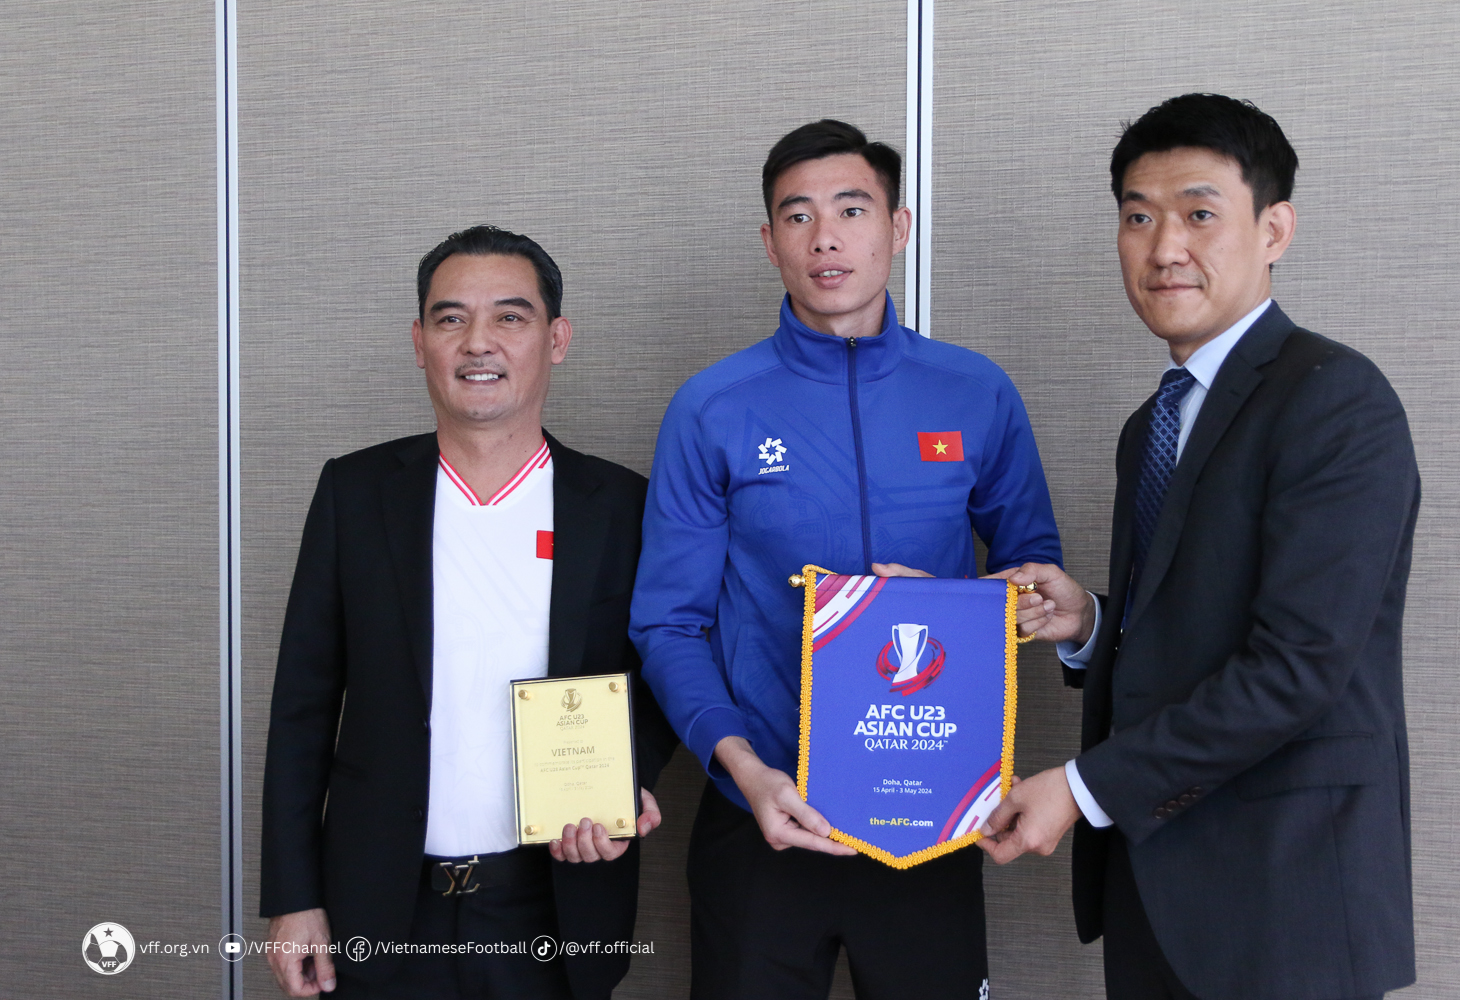 Trưởng đoàn Nguyễn Quốc Hội (bìa trái) và thủ môn Quan Văn Chuẩn đại diện U.23 Việt Nam nhận kỷ niệm chương, cờ lưu niệm tham dự VCK U.23 châu Á 2024 của AFC